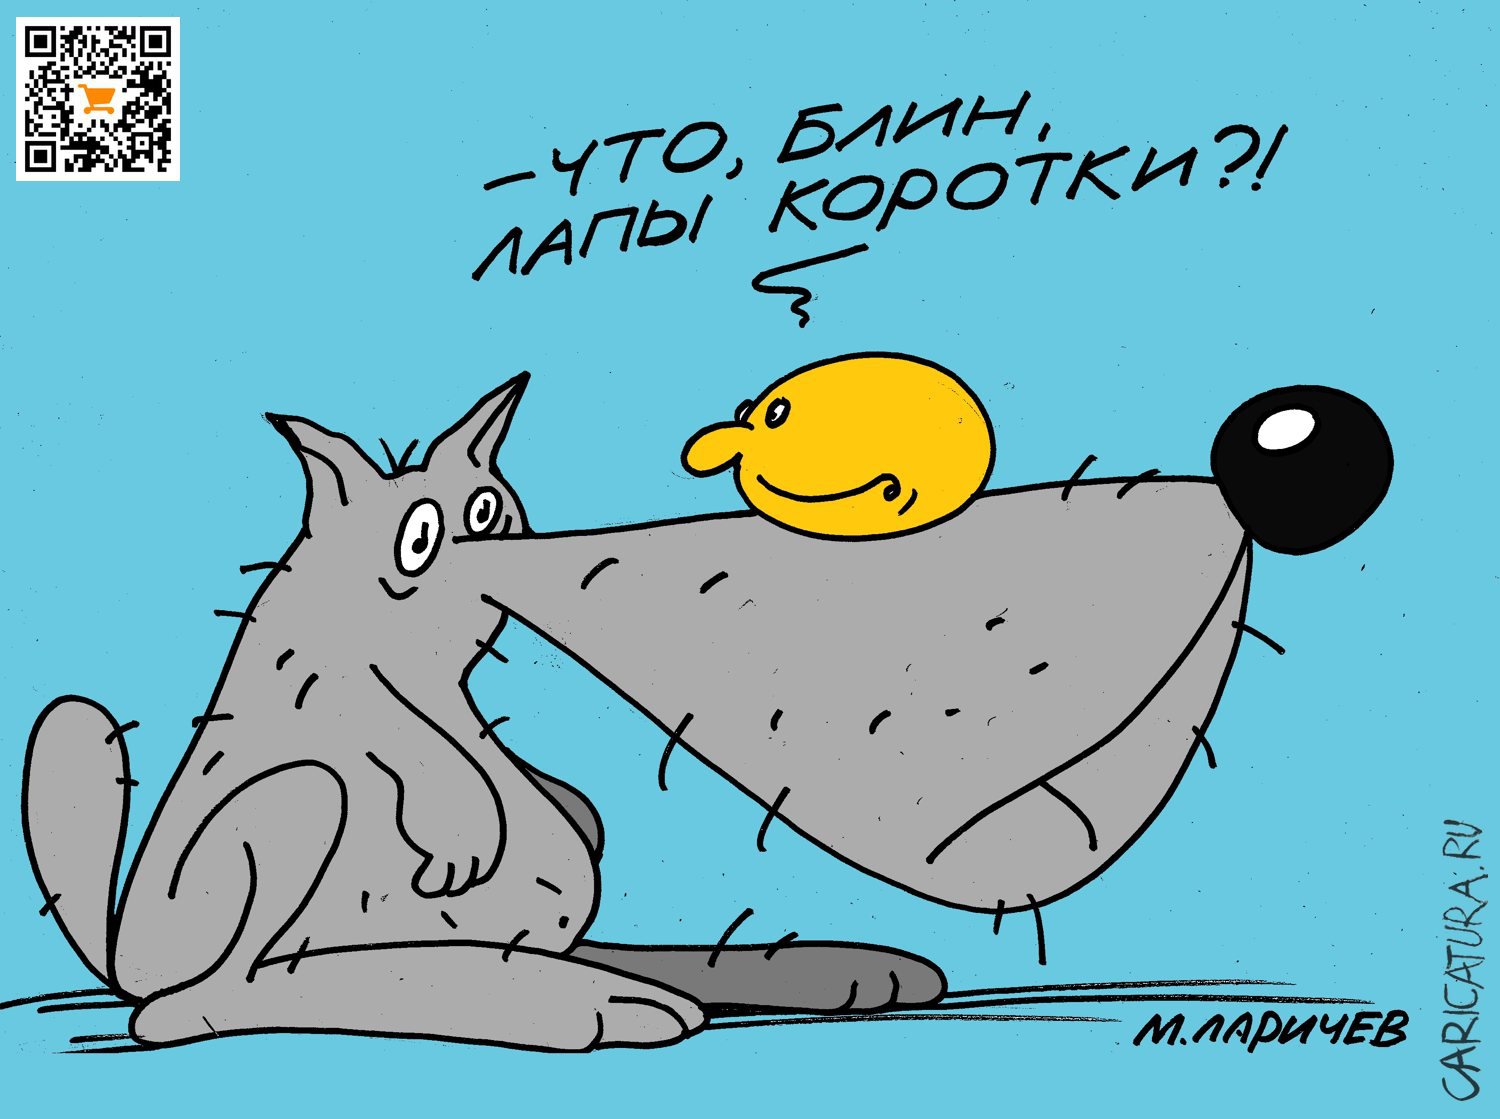 Карикатура "Лапы", Михаил Ларичев